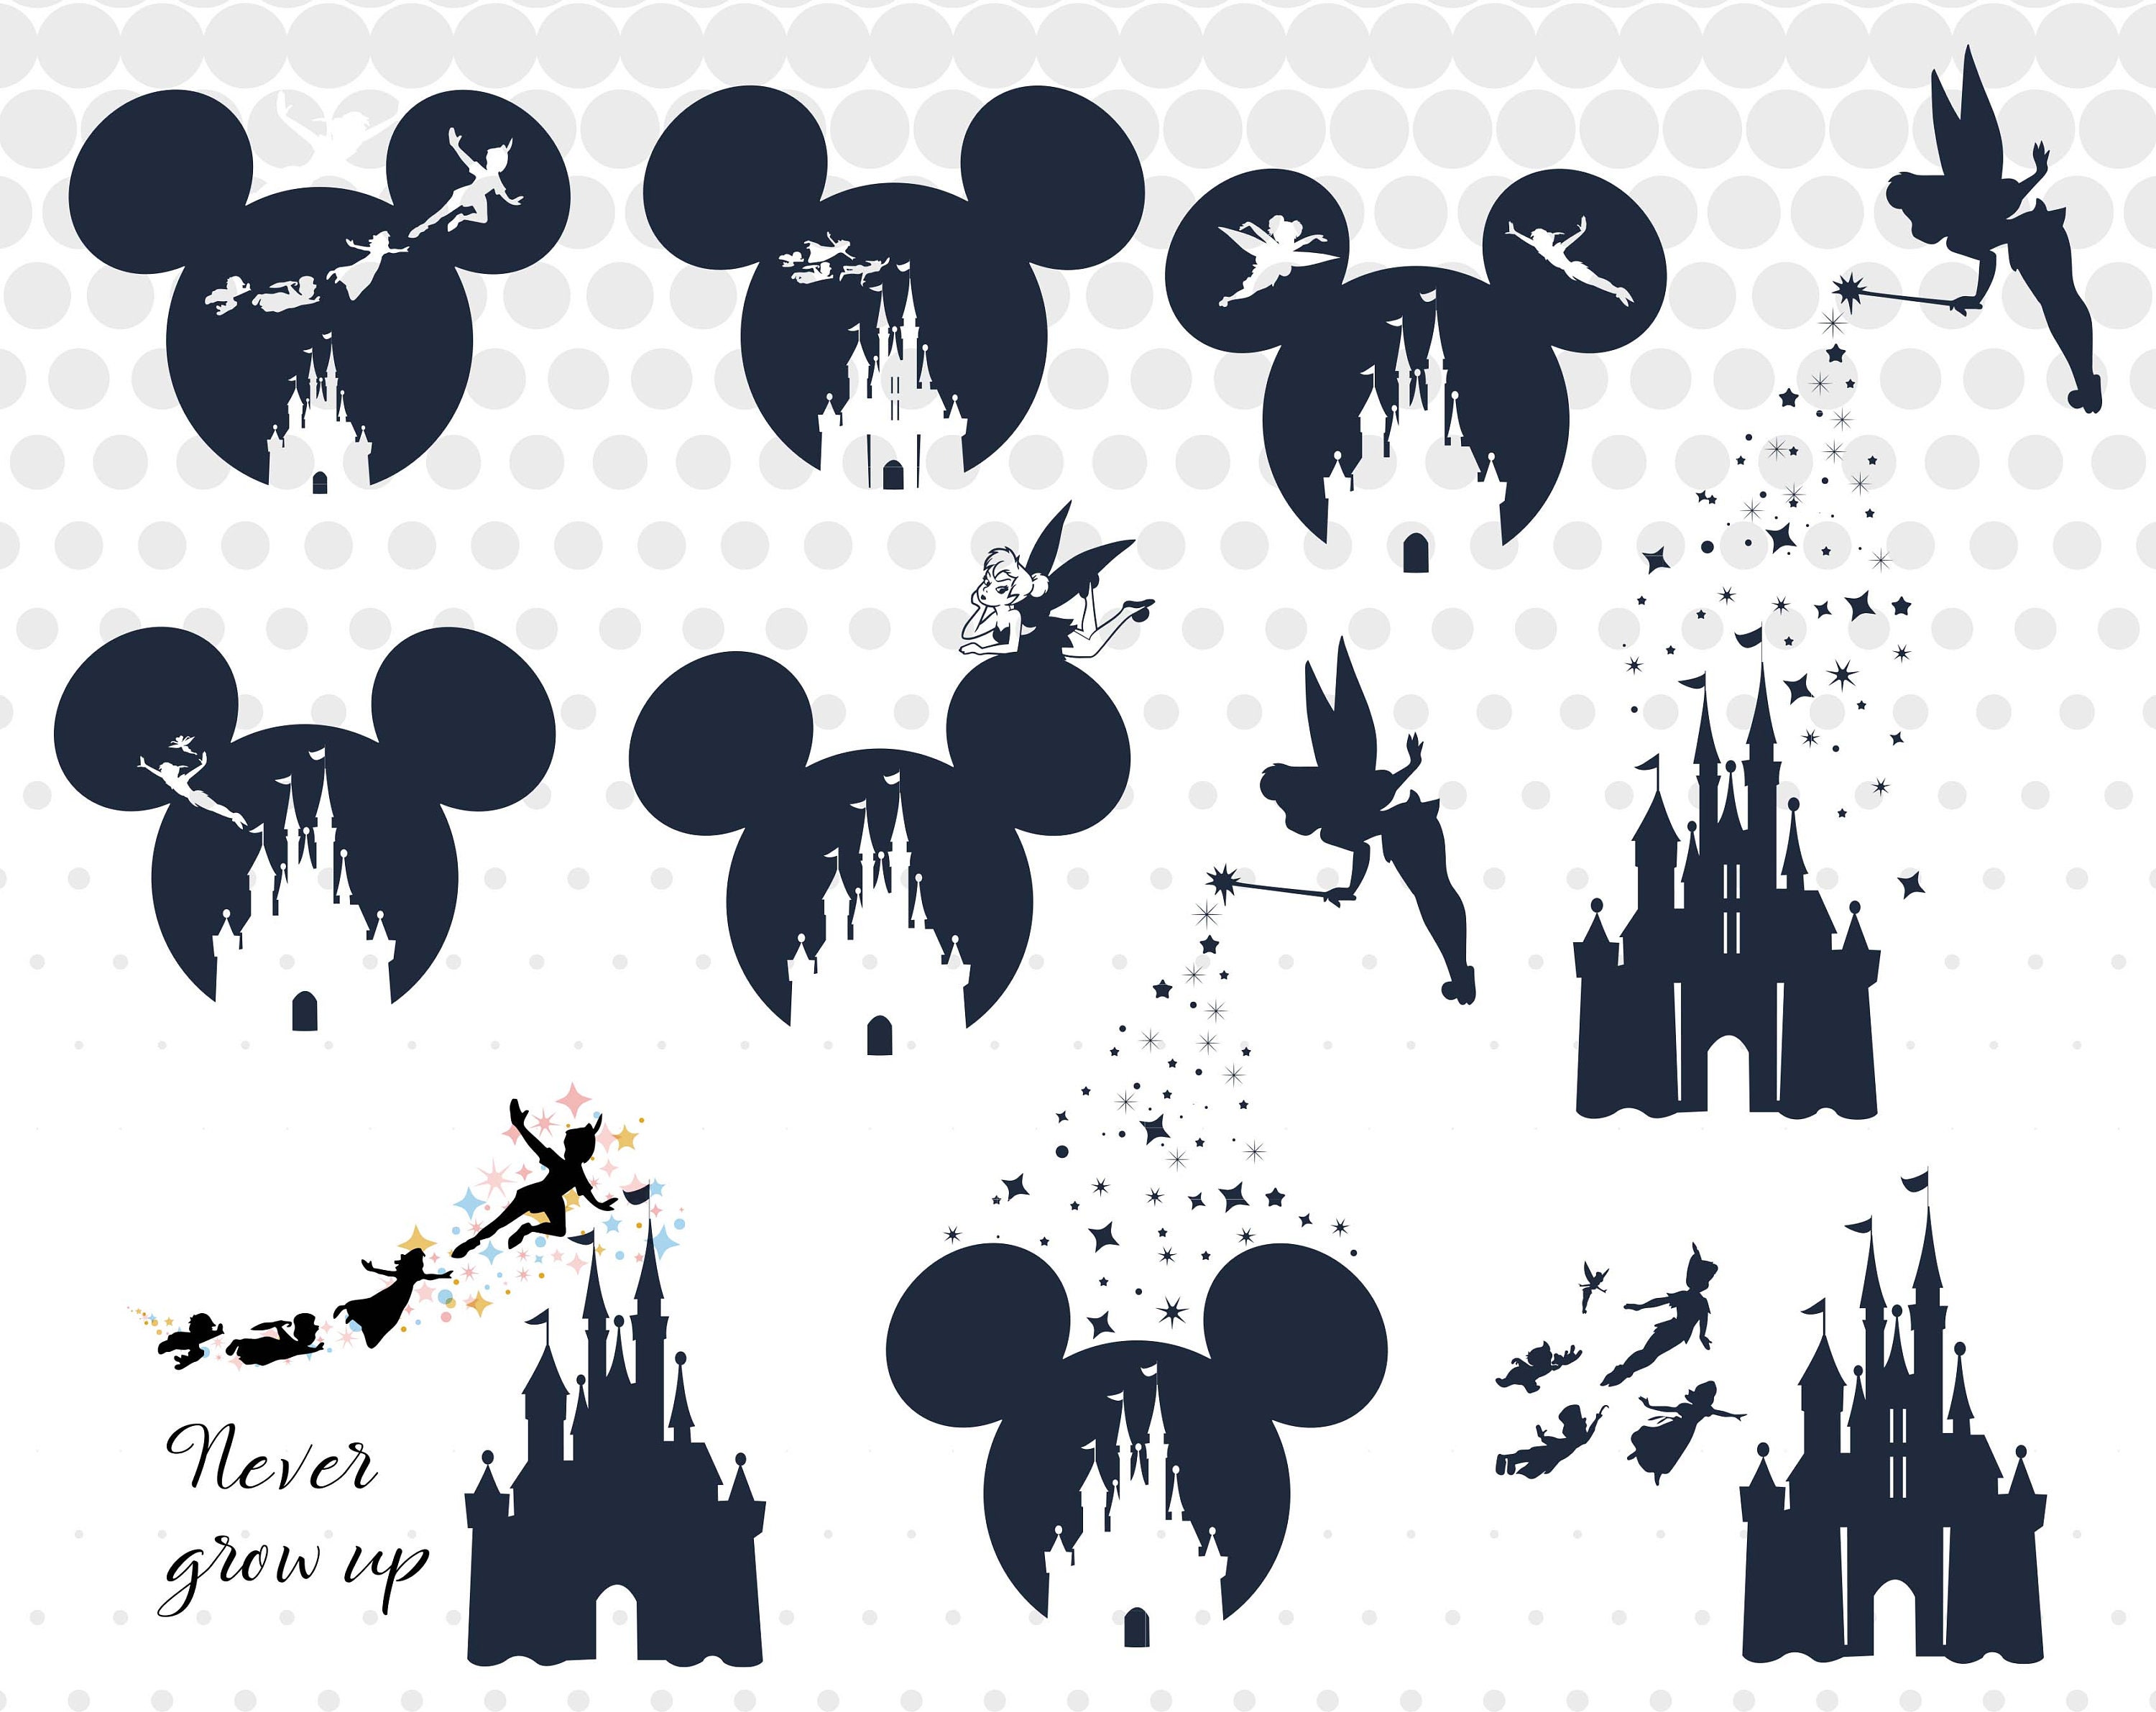 Download Tinkerbell svgpngdxf/Disney castle svgpngdxf/Peter Pan svg ...